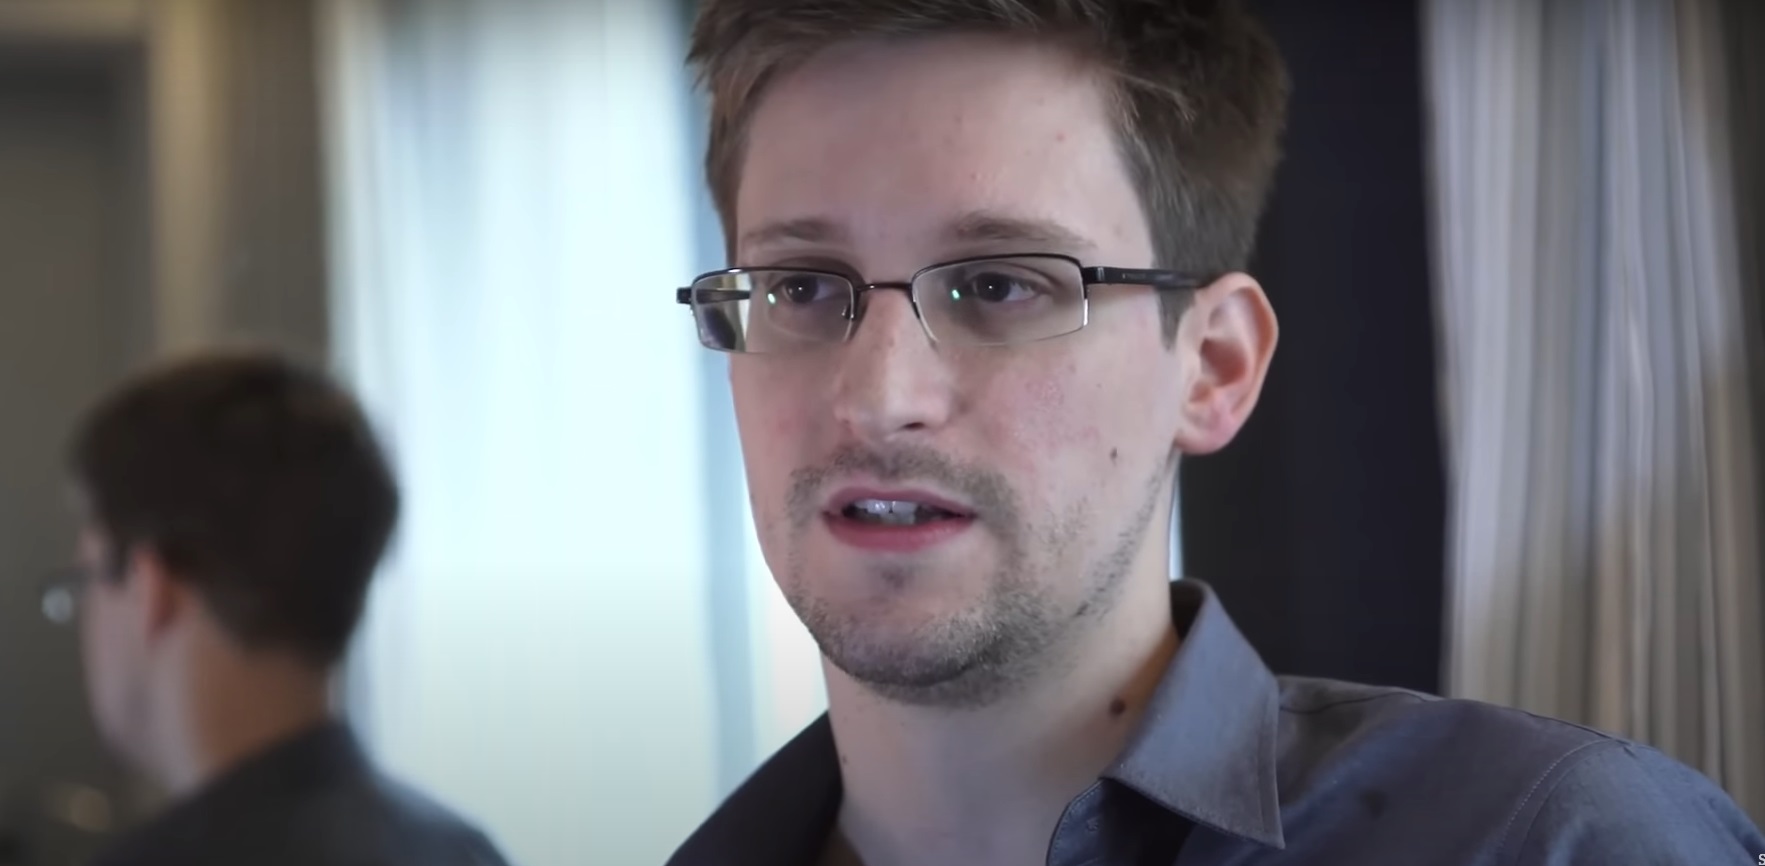 DOCUMENTO. Putin concede la ciudadanía rusa a Snowden, el ex empleado de la CIA que filtró secretos de la NSA